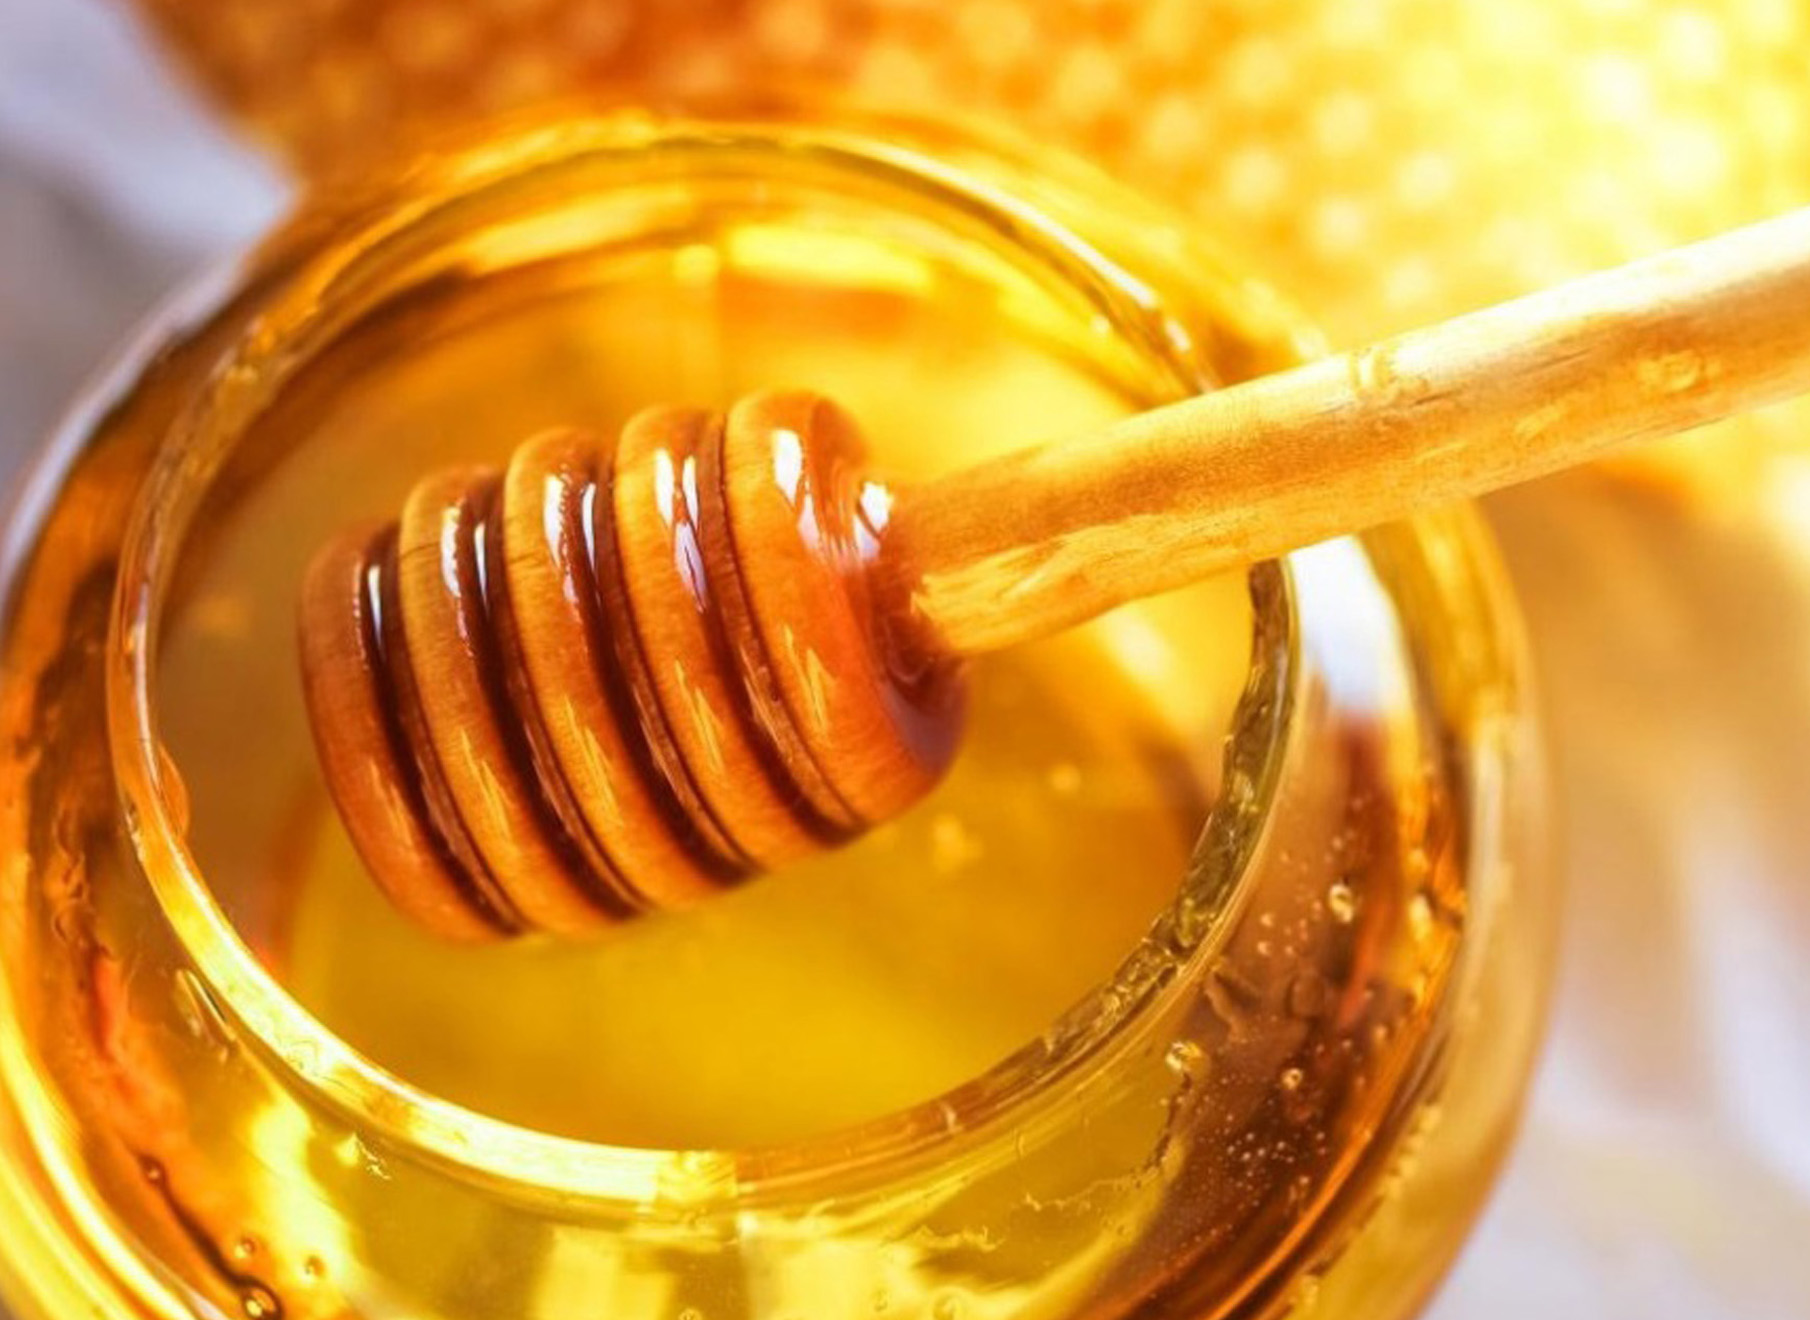 beekeeping products: honey, propolis, pollen